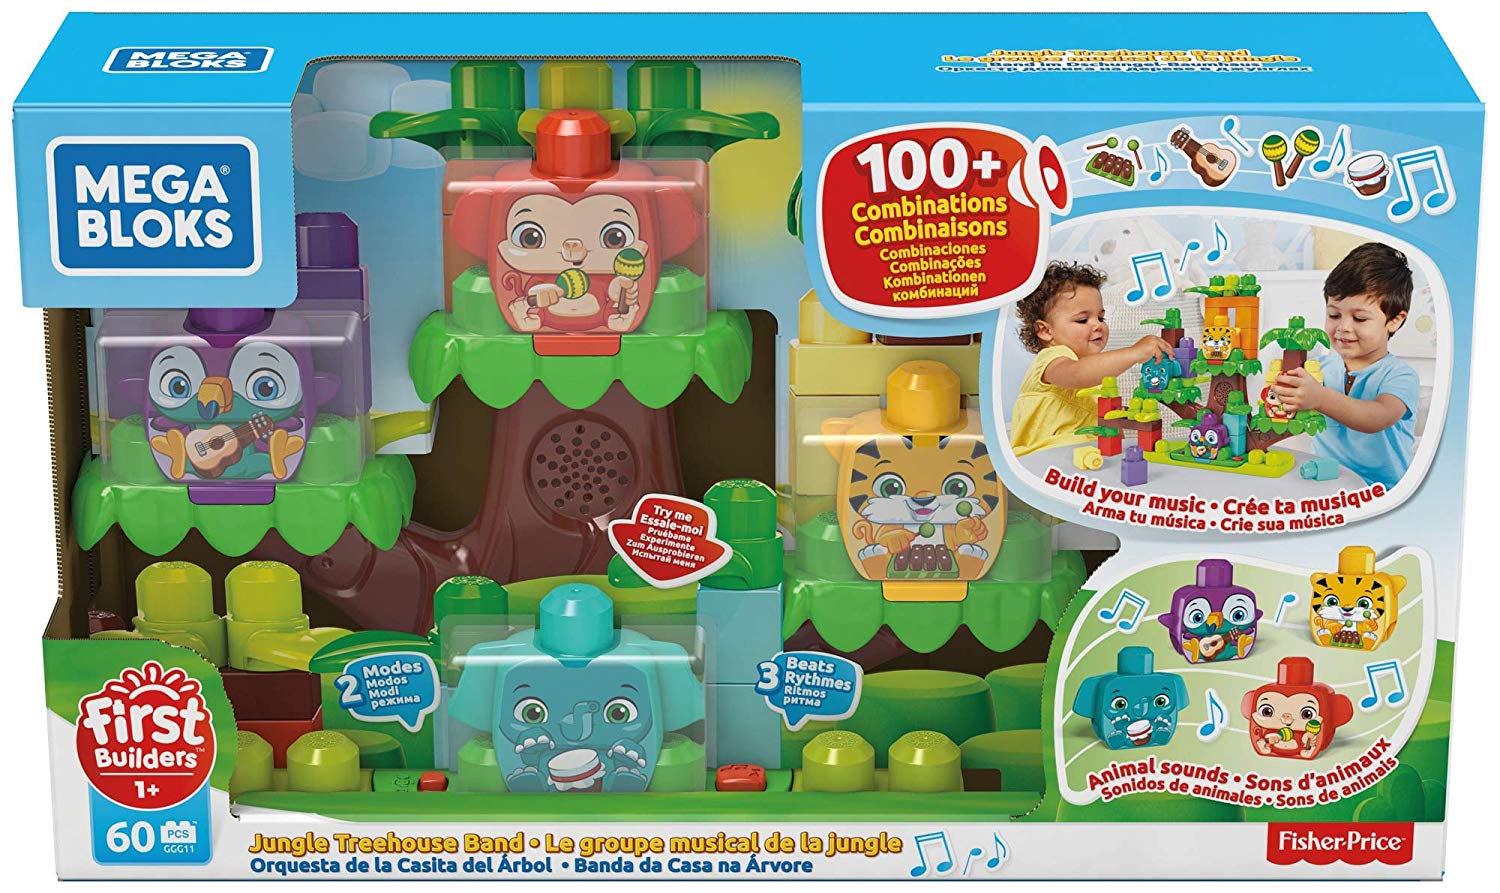 Mega Blocks Toy (Mattel Ggg11)